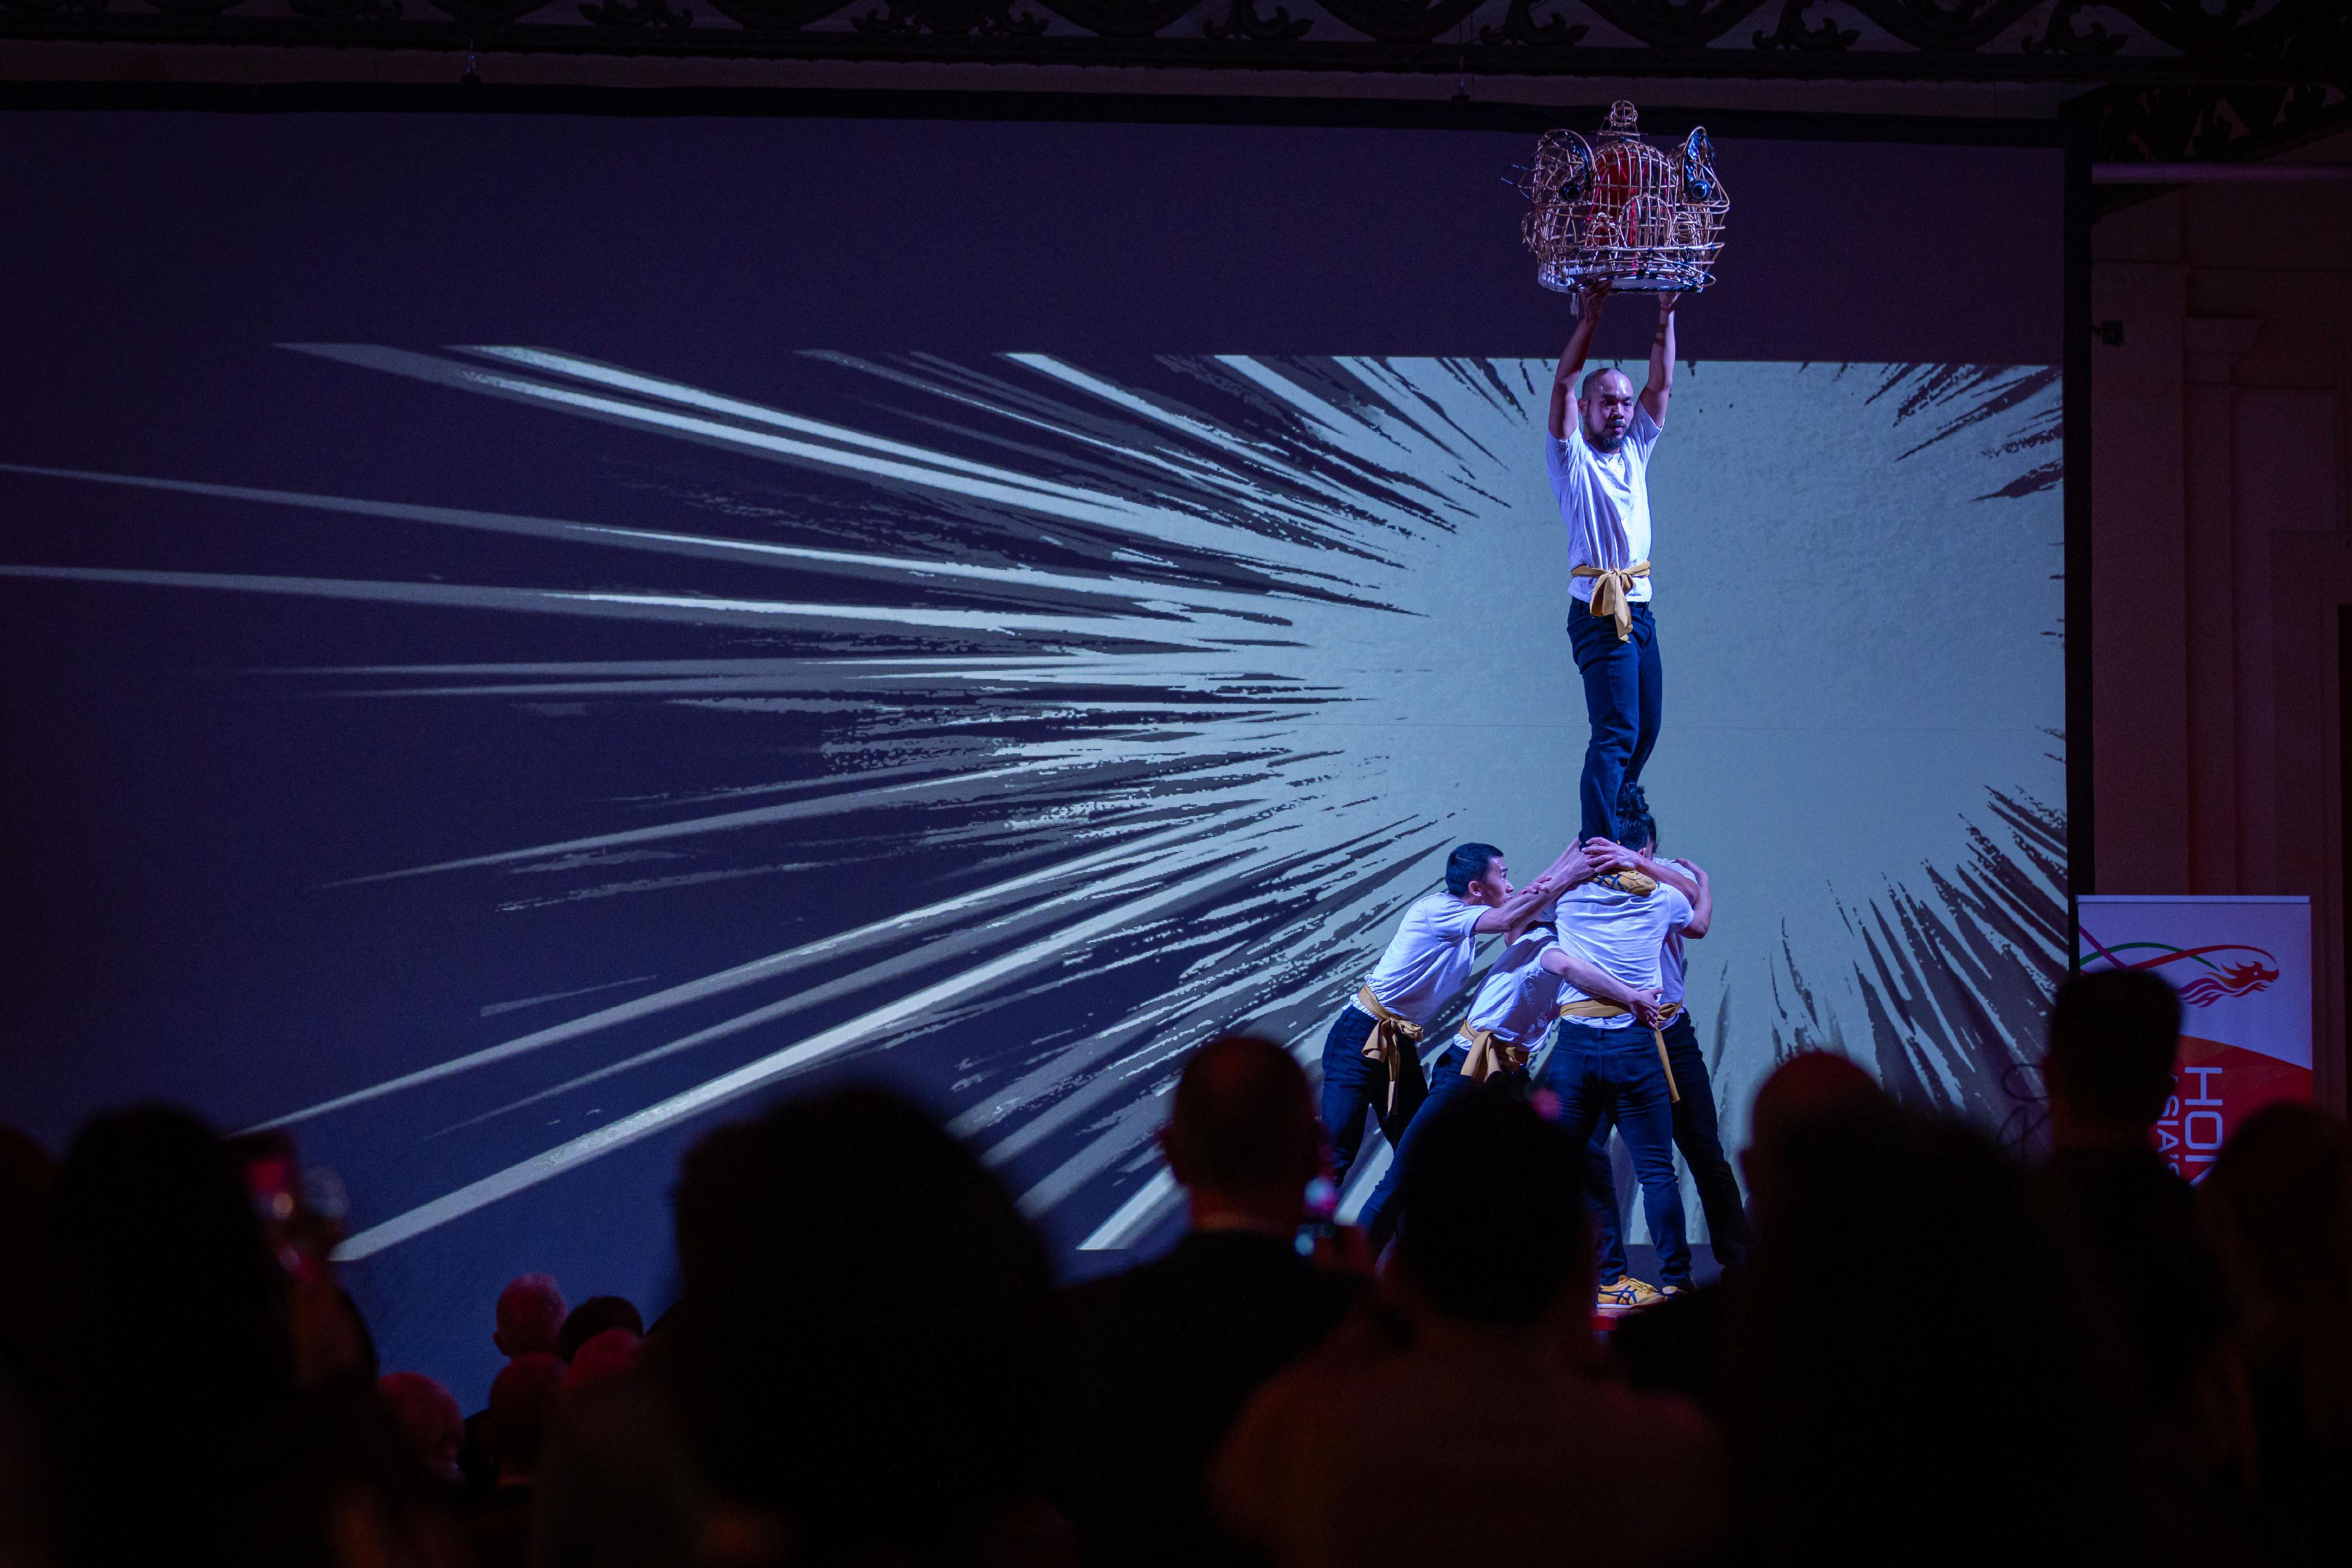 二月二十日（布魯塞爾時間）在比利時布魯塞爾舉辦的新春酒會上，TS Crew舞團表演以龍為主題的舞蹈《Convergence: MovINK Dragon》。呼應舞蹈動作並配以視覺和聲音效果的動畫則由動漫創作人葉偉青創作及導演。整場演出由香港藝術中心（動漫基地）策劃及製作。